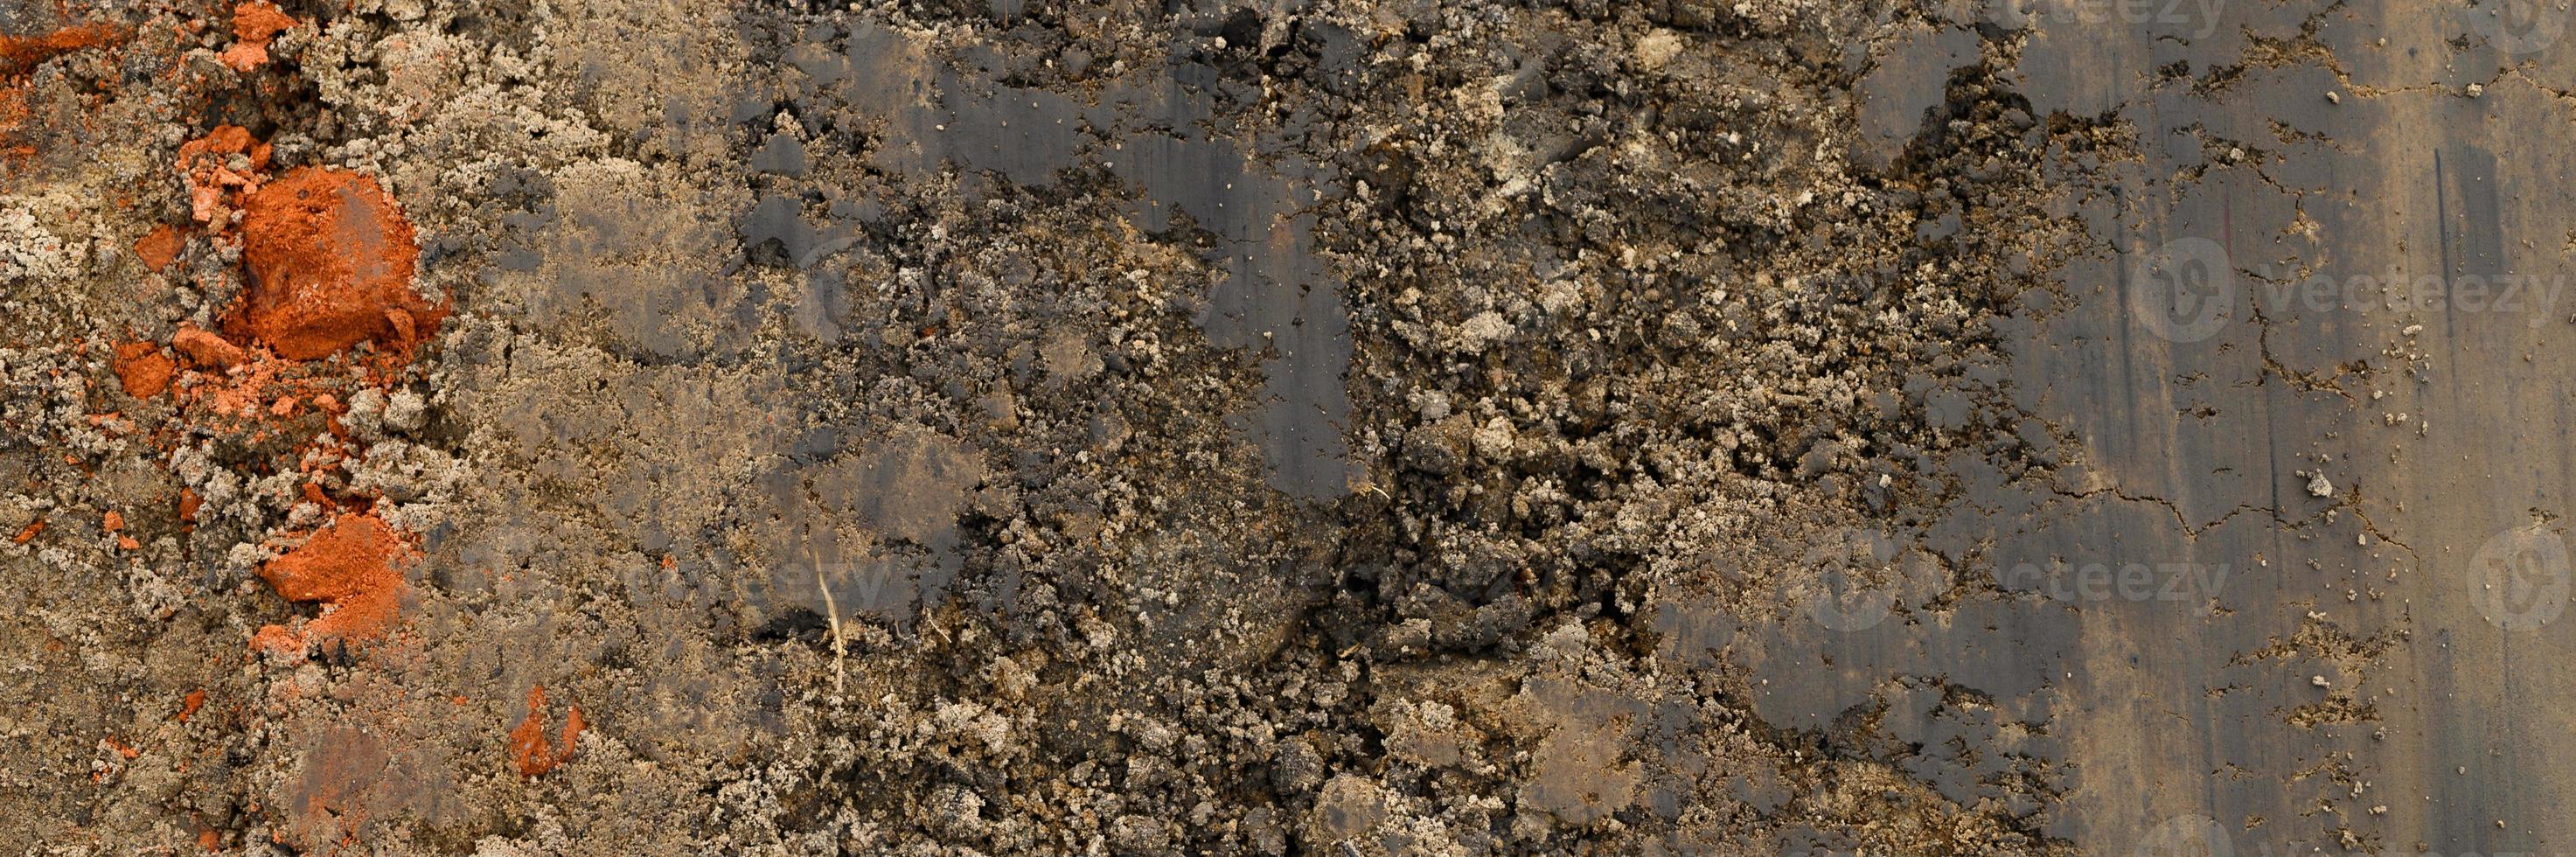 Hintergrundtextur von der glatten Oberfläche des Sandes foto